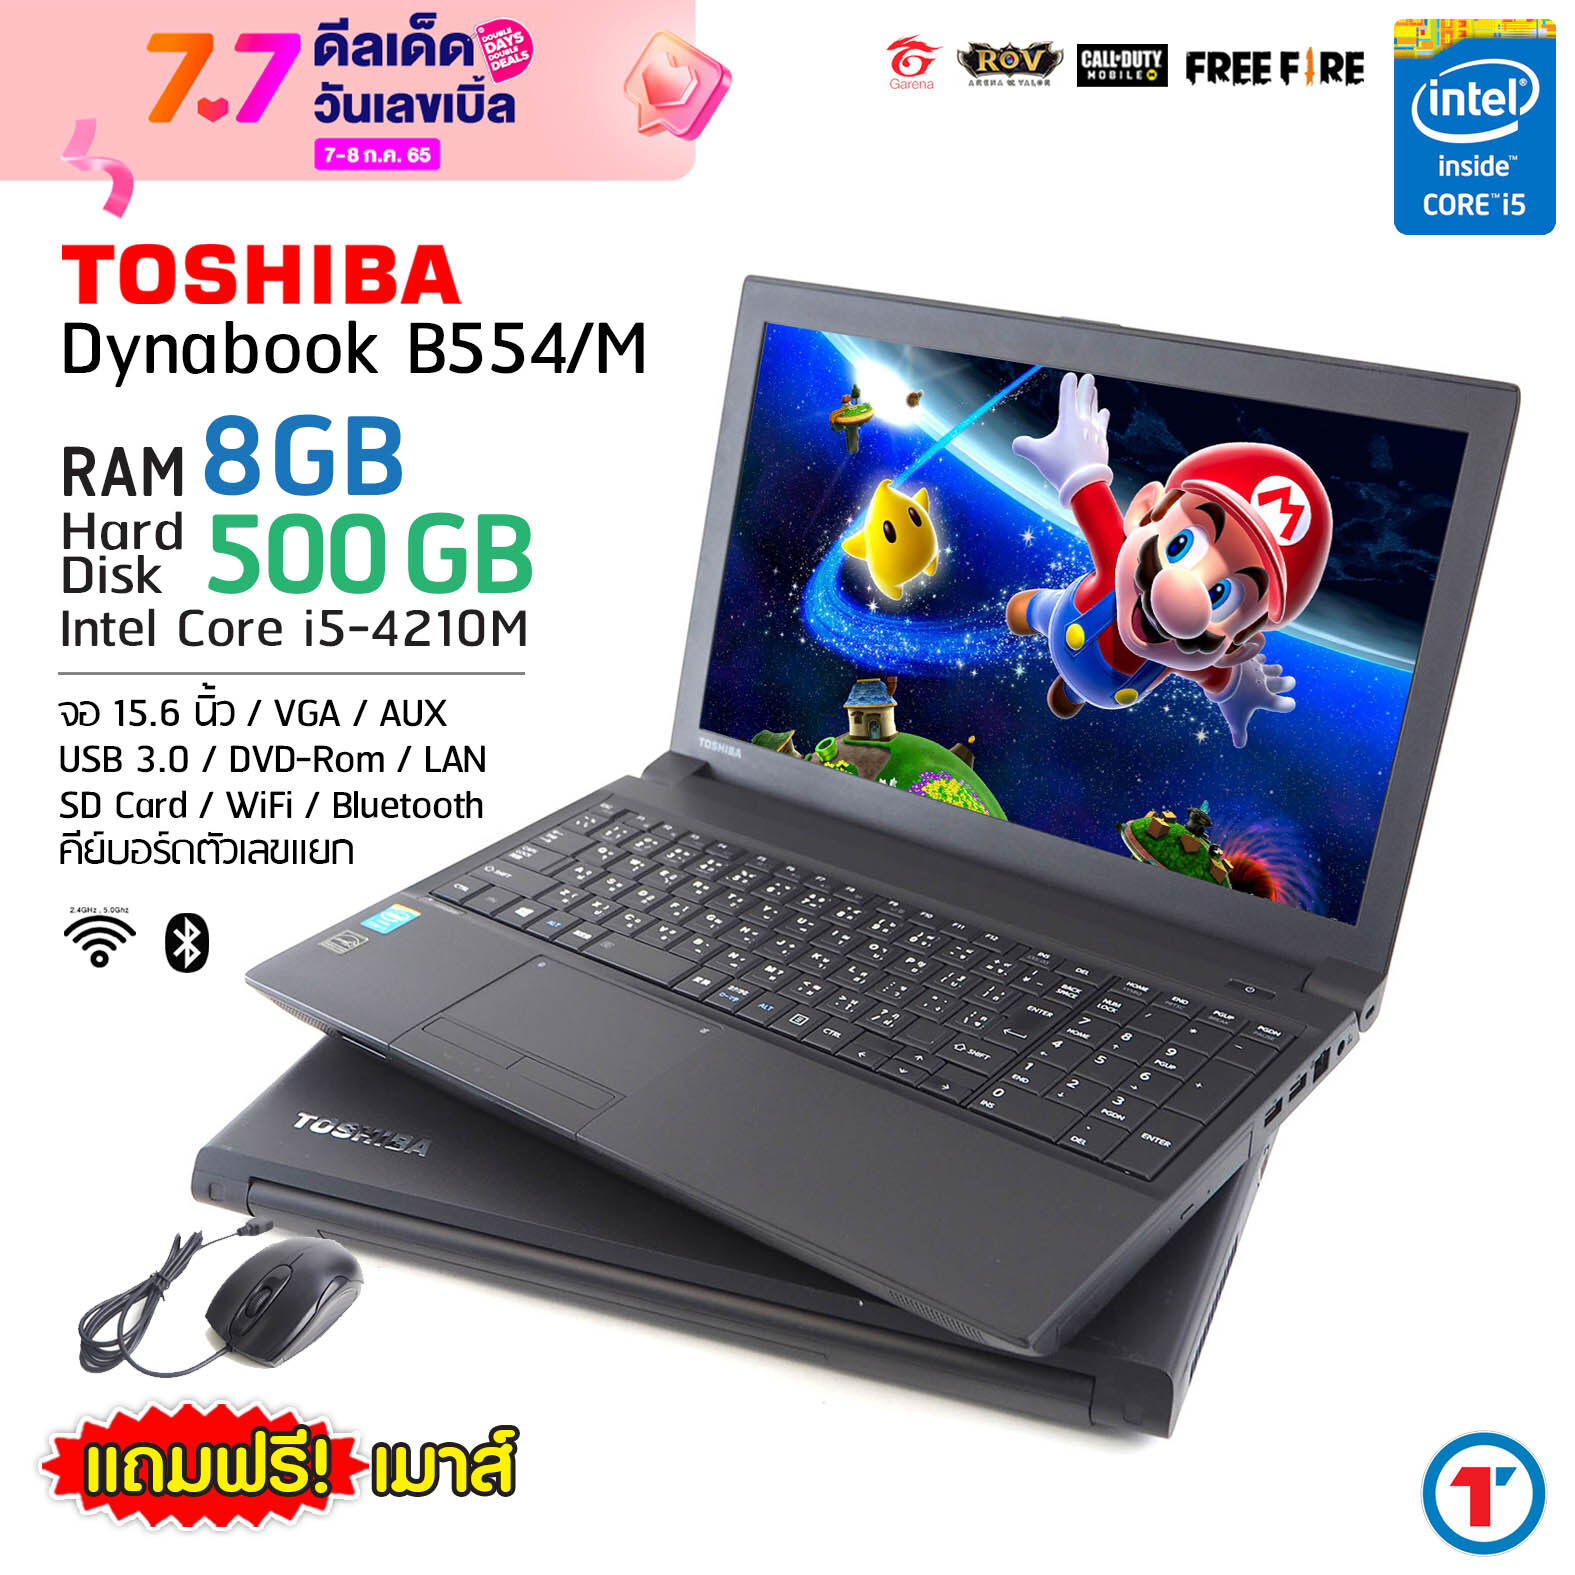 โน๊ตบุ๊ค Notebook Toshiba Satellite B554/M - Core i5 RAM 8 GB HDD 500 GB แป้นตัวเลขแยก คอมมือสอง Refurbished laptop used notebook ส่งฟรี สภาพดี 2022 มีประกันและบริการหลังการขาย By To